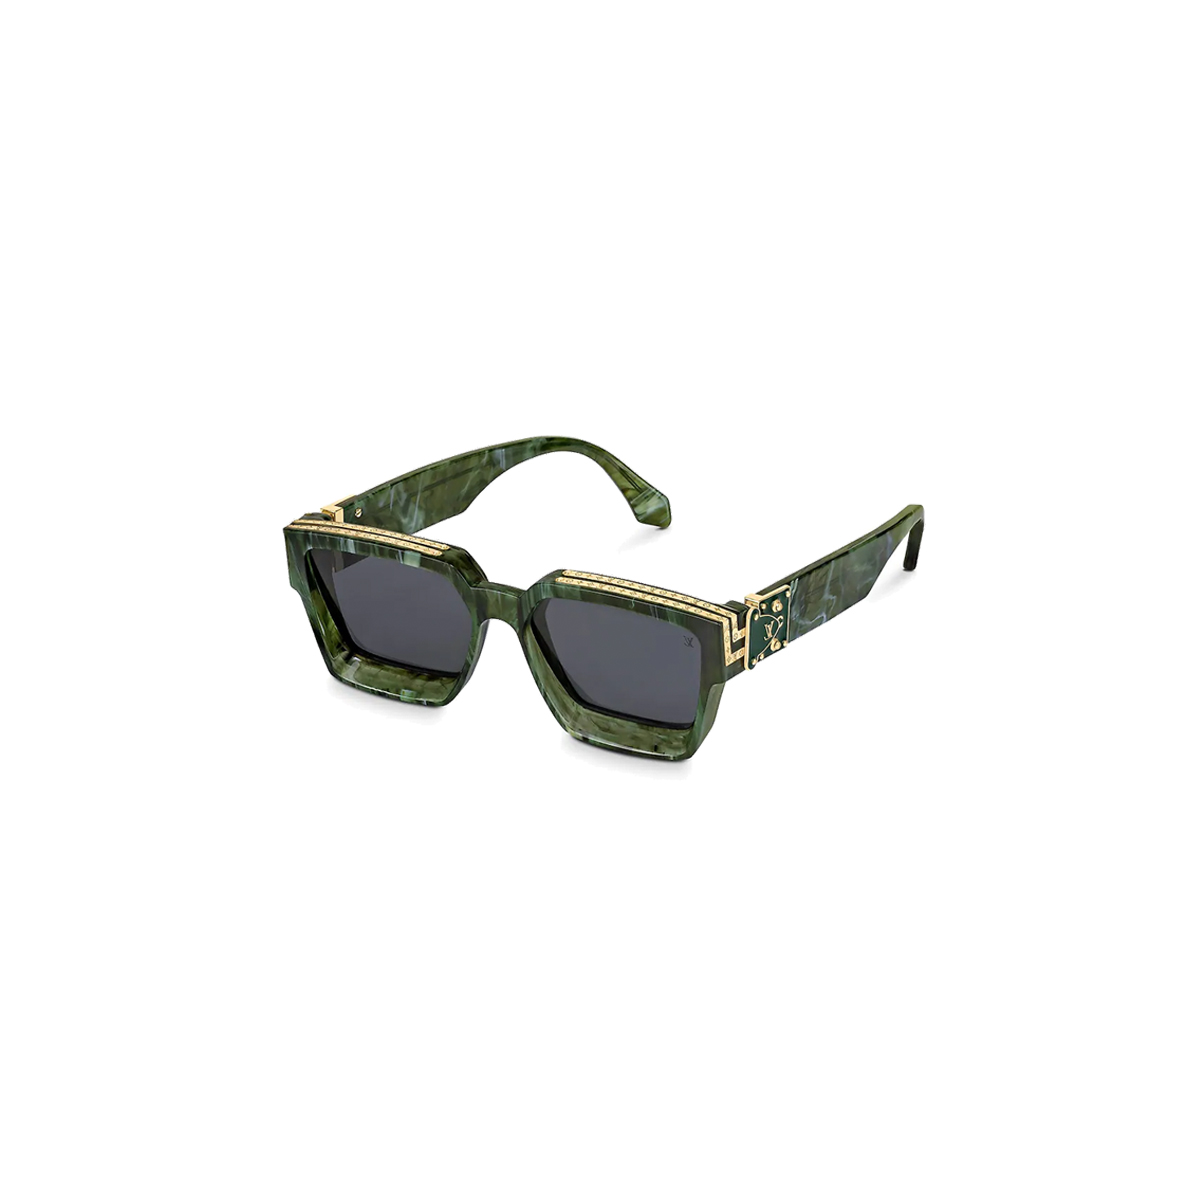 Louis Vuitton x Virgil Abloh 'Tourist vs Purist' 1.1 Millionaire Sunglasses  - clothing & accessories - by owner 